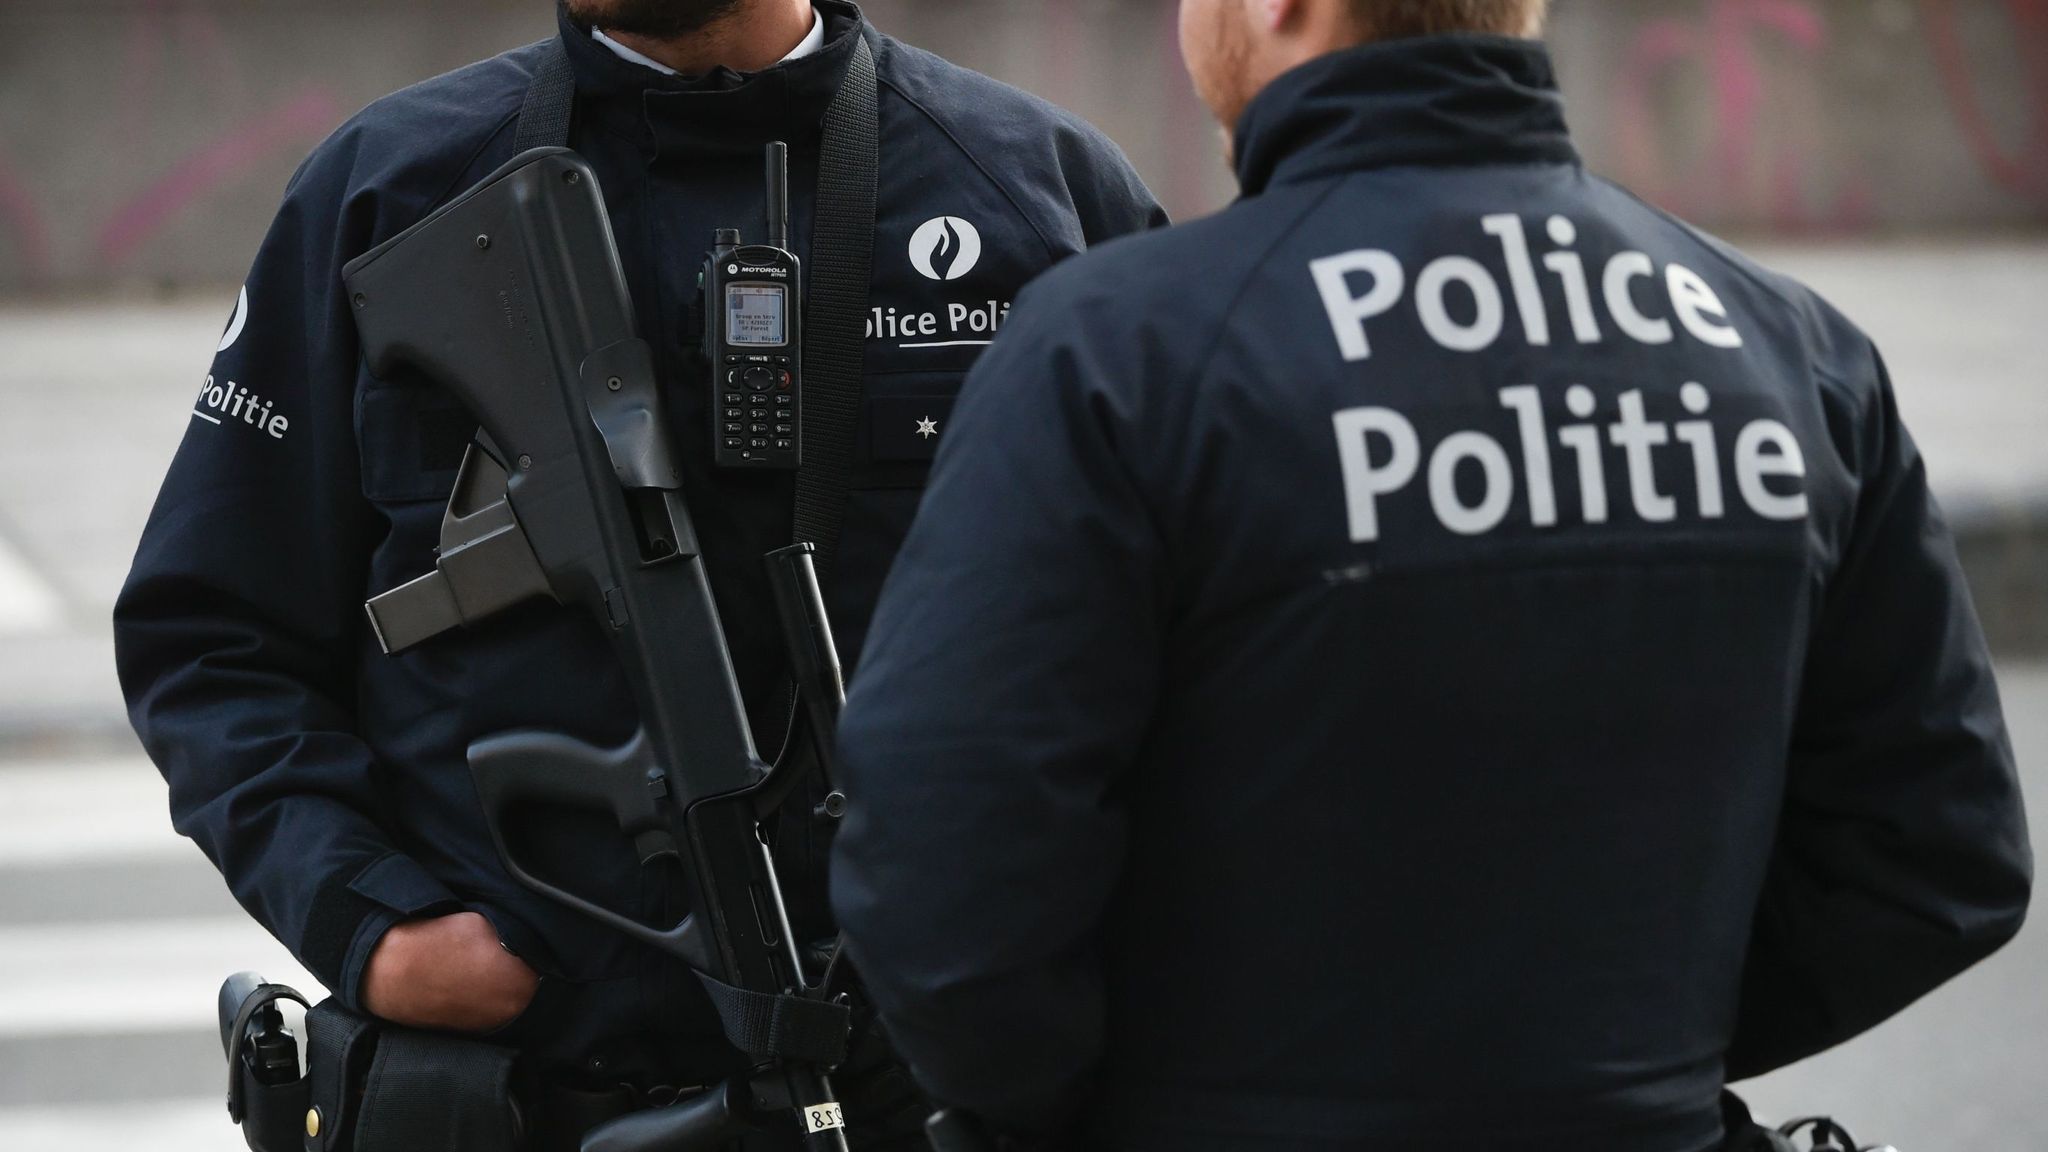 Βέλγιο: Συνελήφθησαν οκτώ ύποπτοι που πιστεύεται ότι σχεδίαζαν τρομοκρατικές επιθέσεις